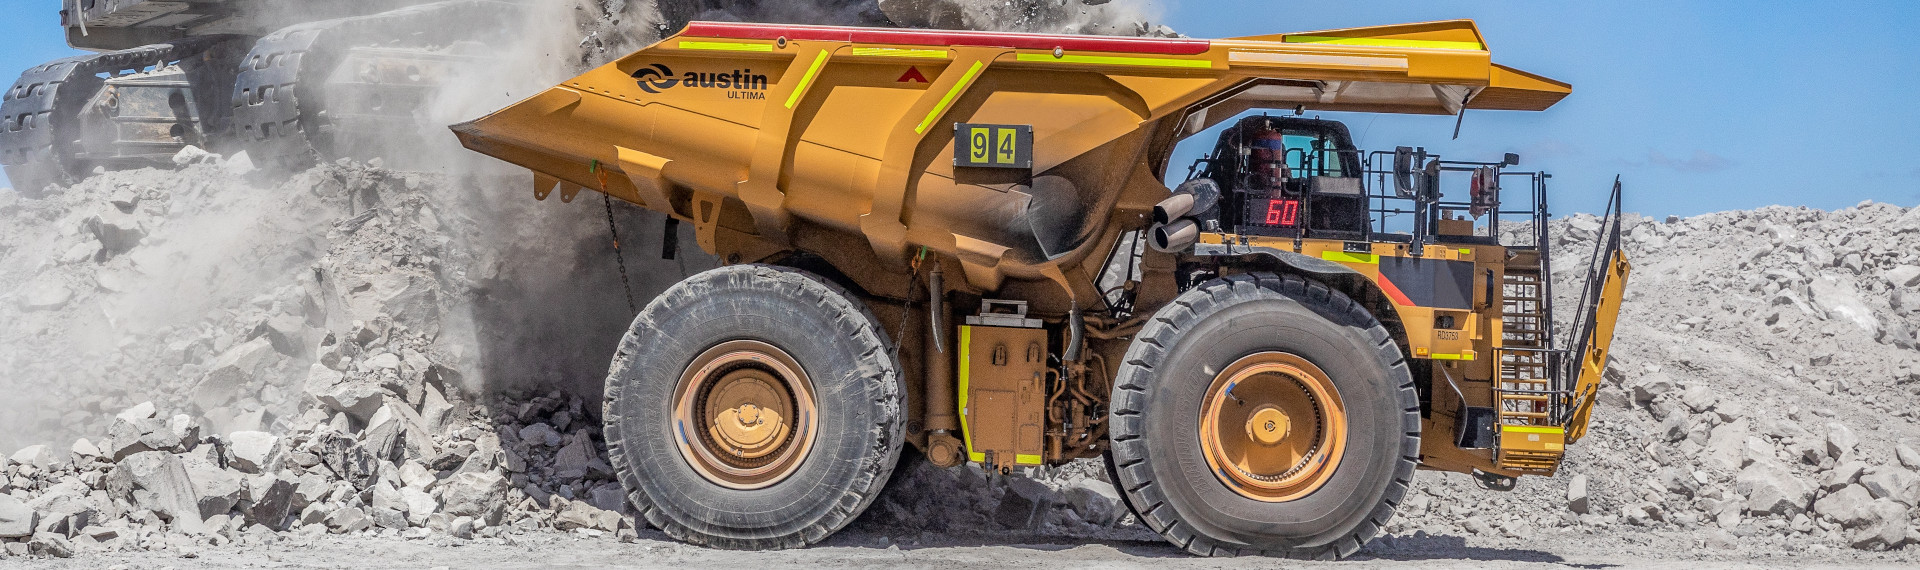 Il camion da miniera superdimensionato di Austin, che pesa il 25% in meno grazie all'acciaio Hardox® 500 Tuf